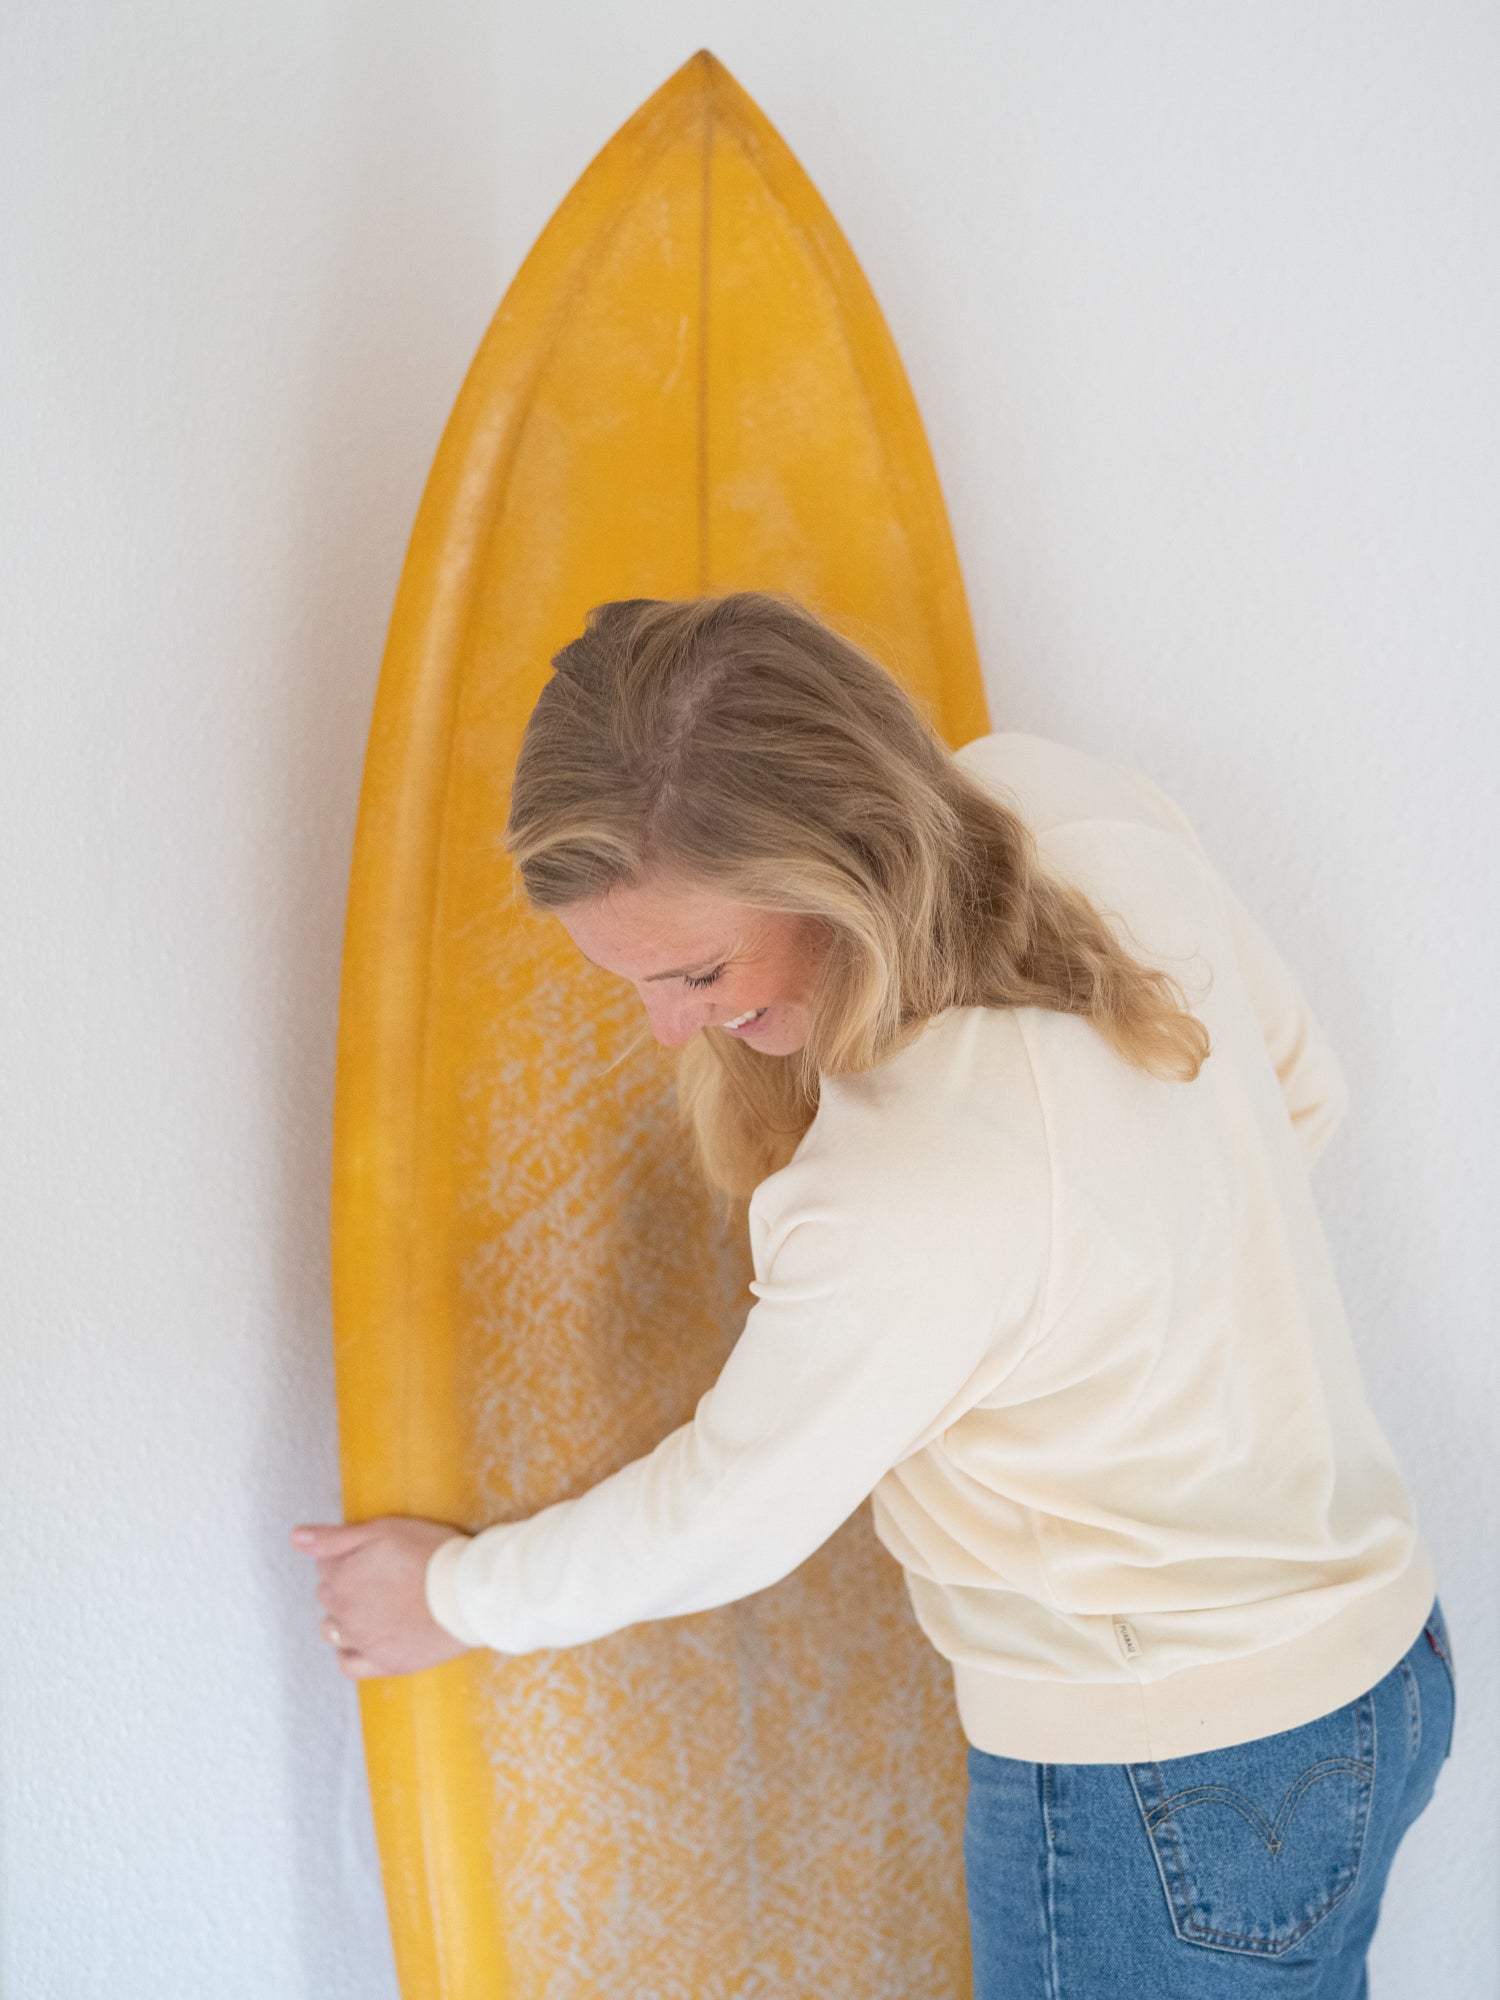 Isi trägt unseren FUXBAU Fair Fashion Frauen Samt Pullover in weiss aus Leftover Fabrics made in Portugal und hält ein Surfbrett in der Hand